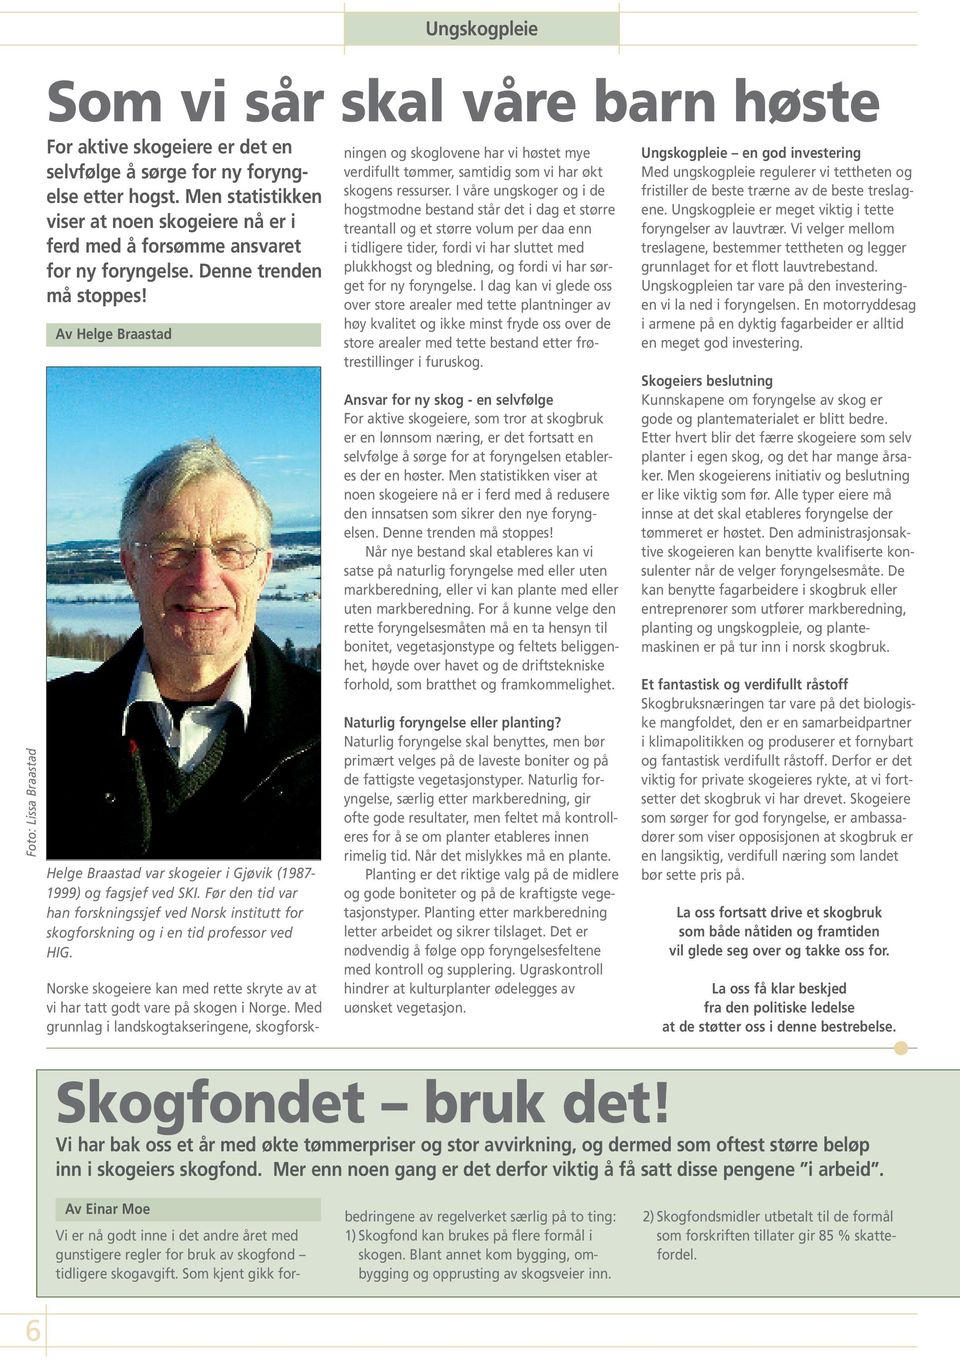 Før den tid var han forskningssjef ved Norsk institutt for skogforskning og i en tid professor ved HIG. Norske skogeiere kan med rette skryte av at vi har tatt godt vare på skogen i Norge.